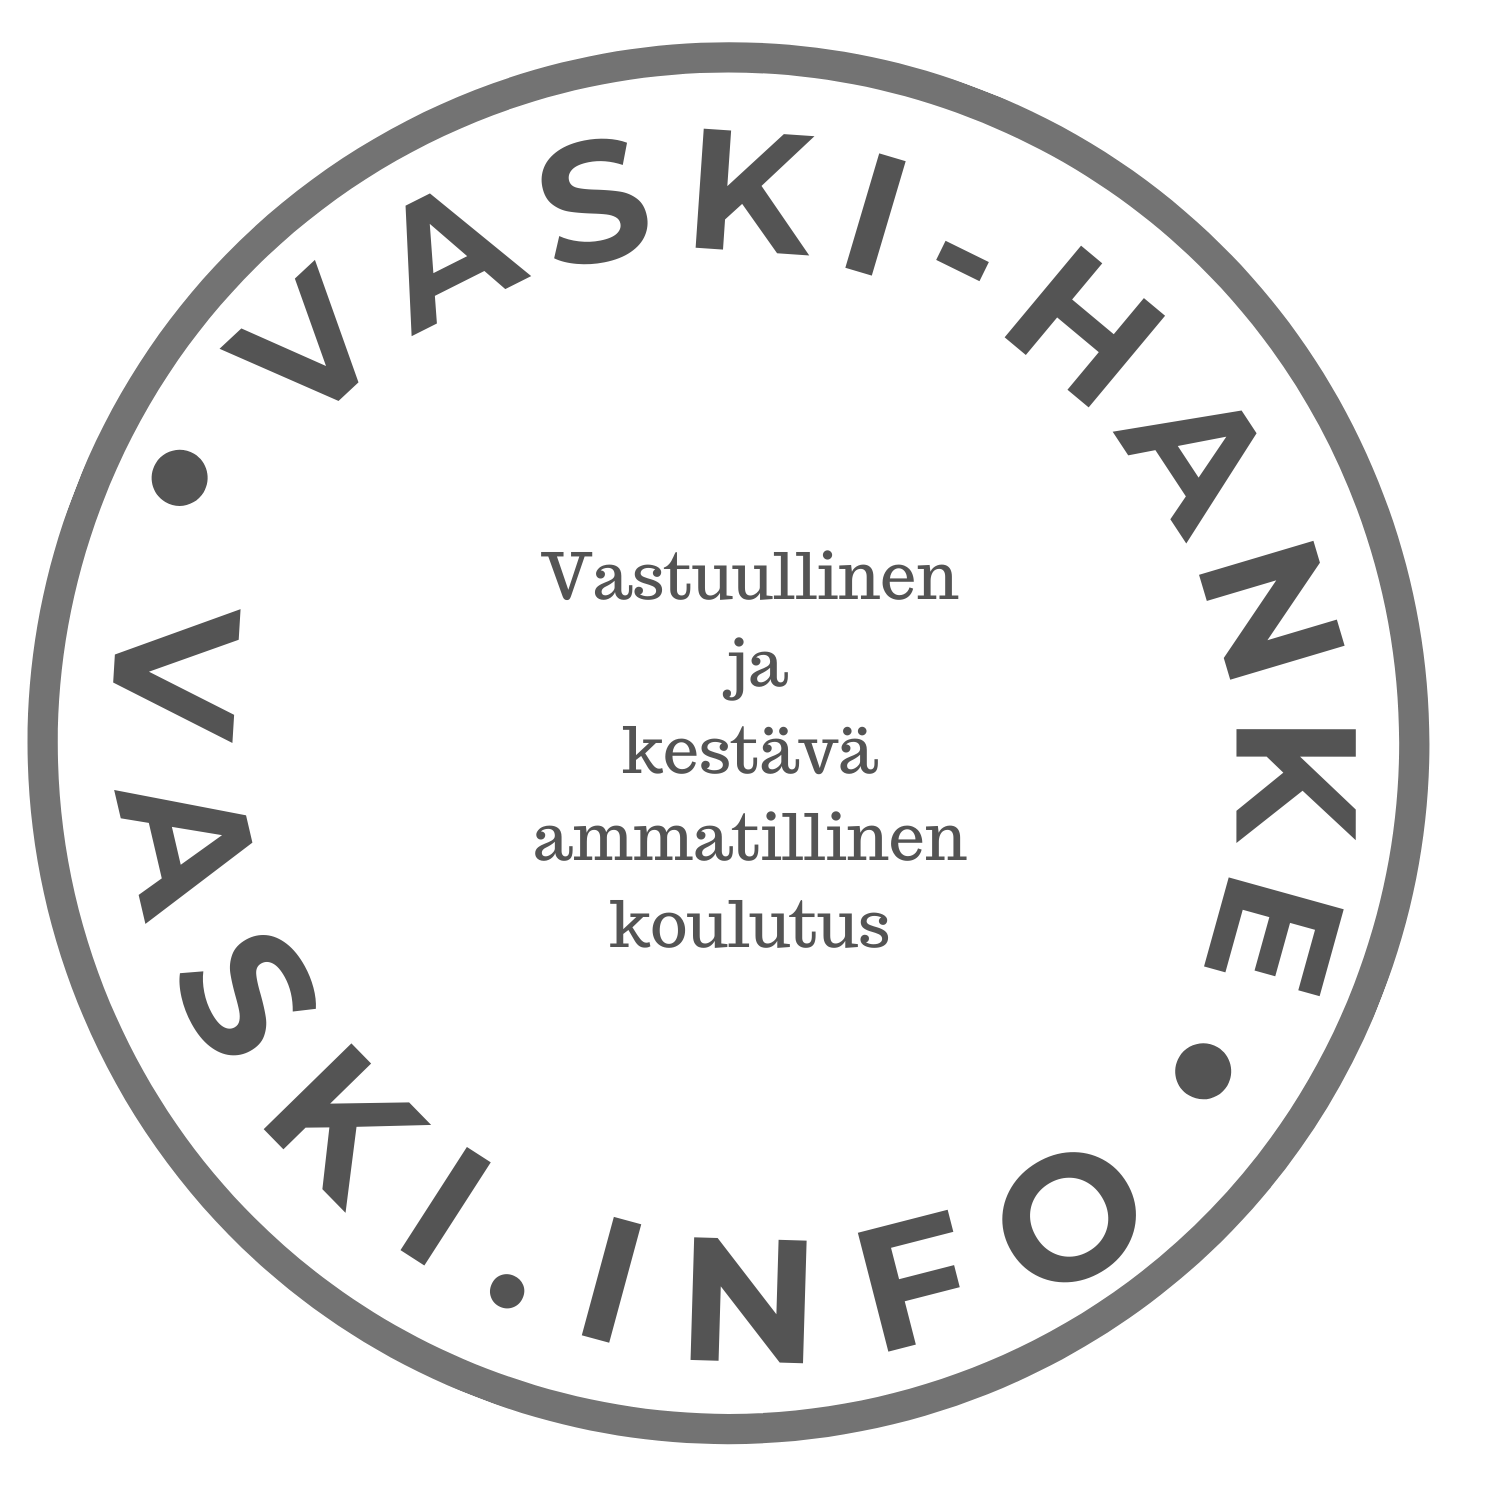 vaskihanke-logo.png (175 KB)